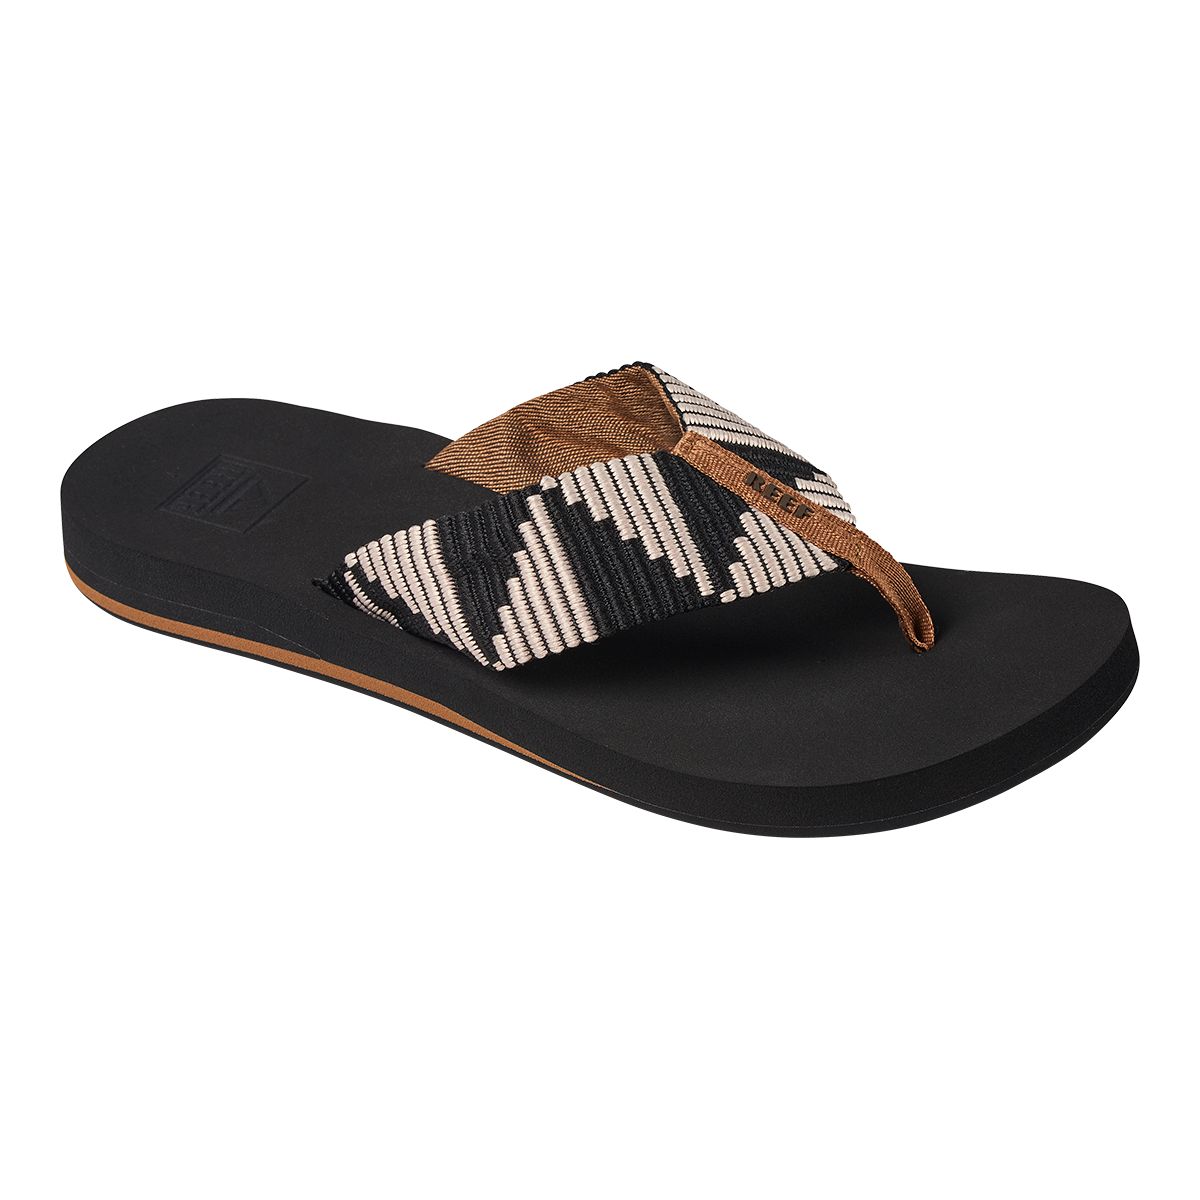 Reef Women's Spring Flip Flops/Sandals